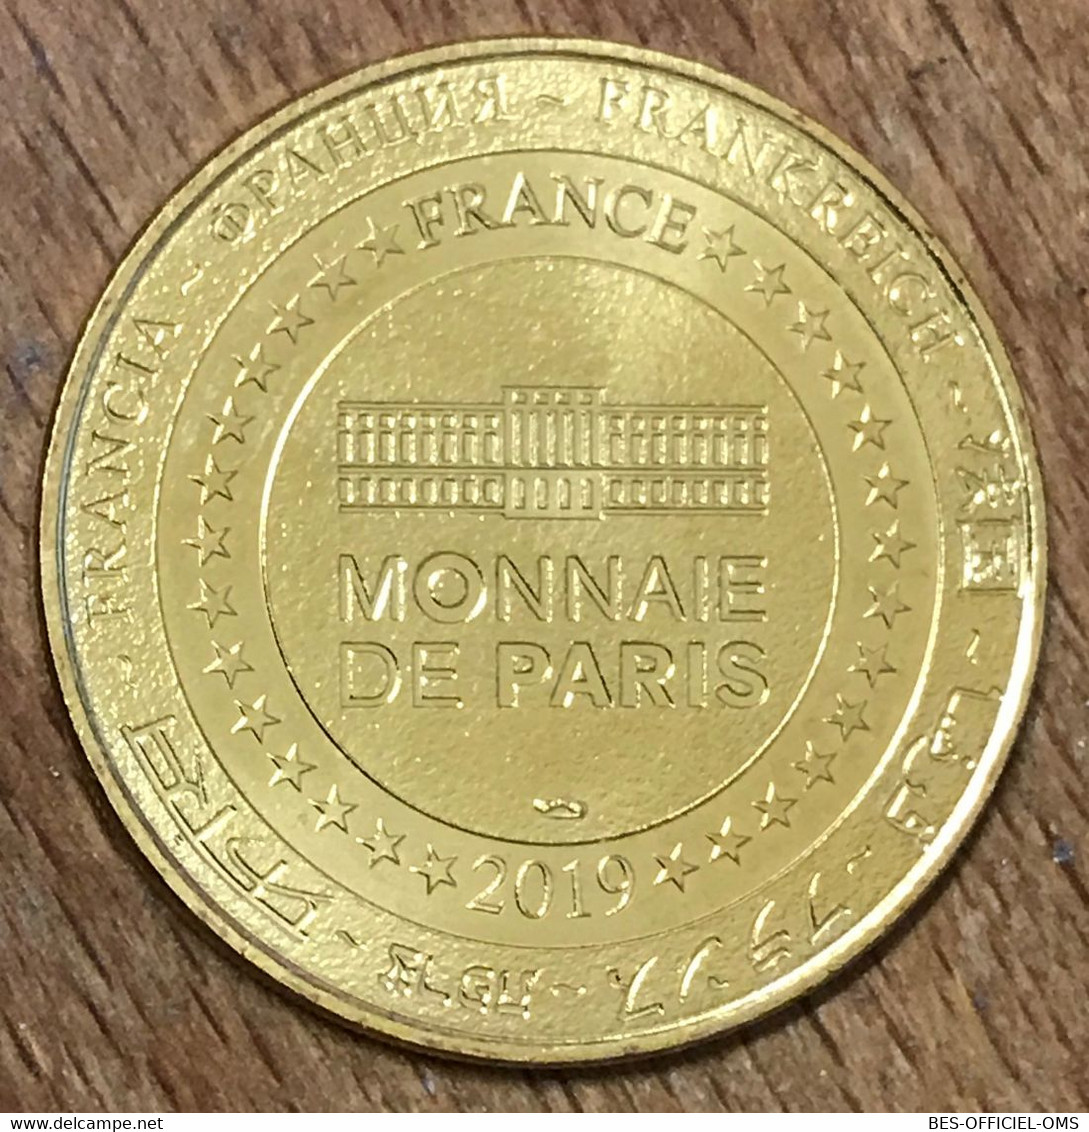 41 CHÂTEAU DE CHEVERNY LES CHIENS MDP 2019 MÉDAILLE SOUVENIR MONNAIE DE PARIS JETON TOURISTIQUE MEDALS COINS TOKENS - 2019